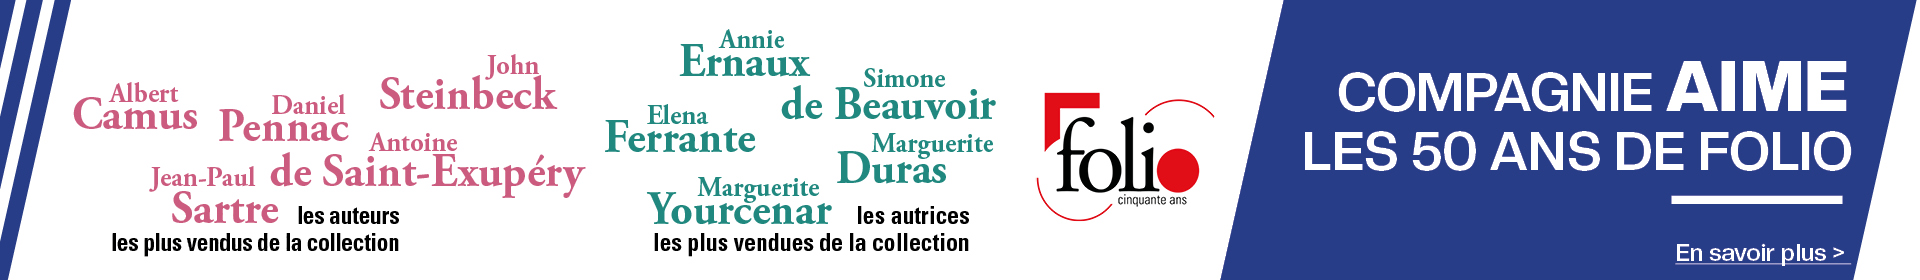 Compagnie fete les 50 ans de la collection poche Folio ! de Saint-Exupéry, Steinbeck, Pennac, Sartre, Camus